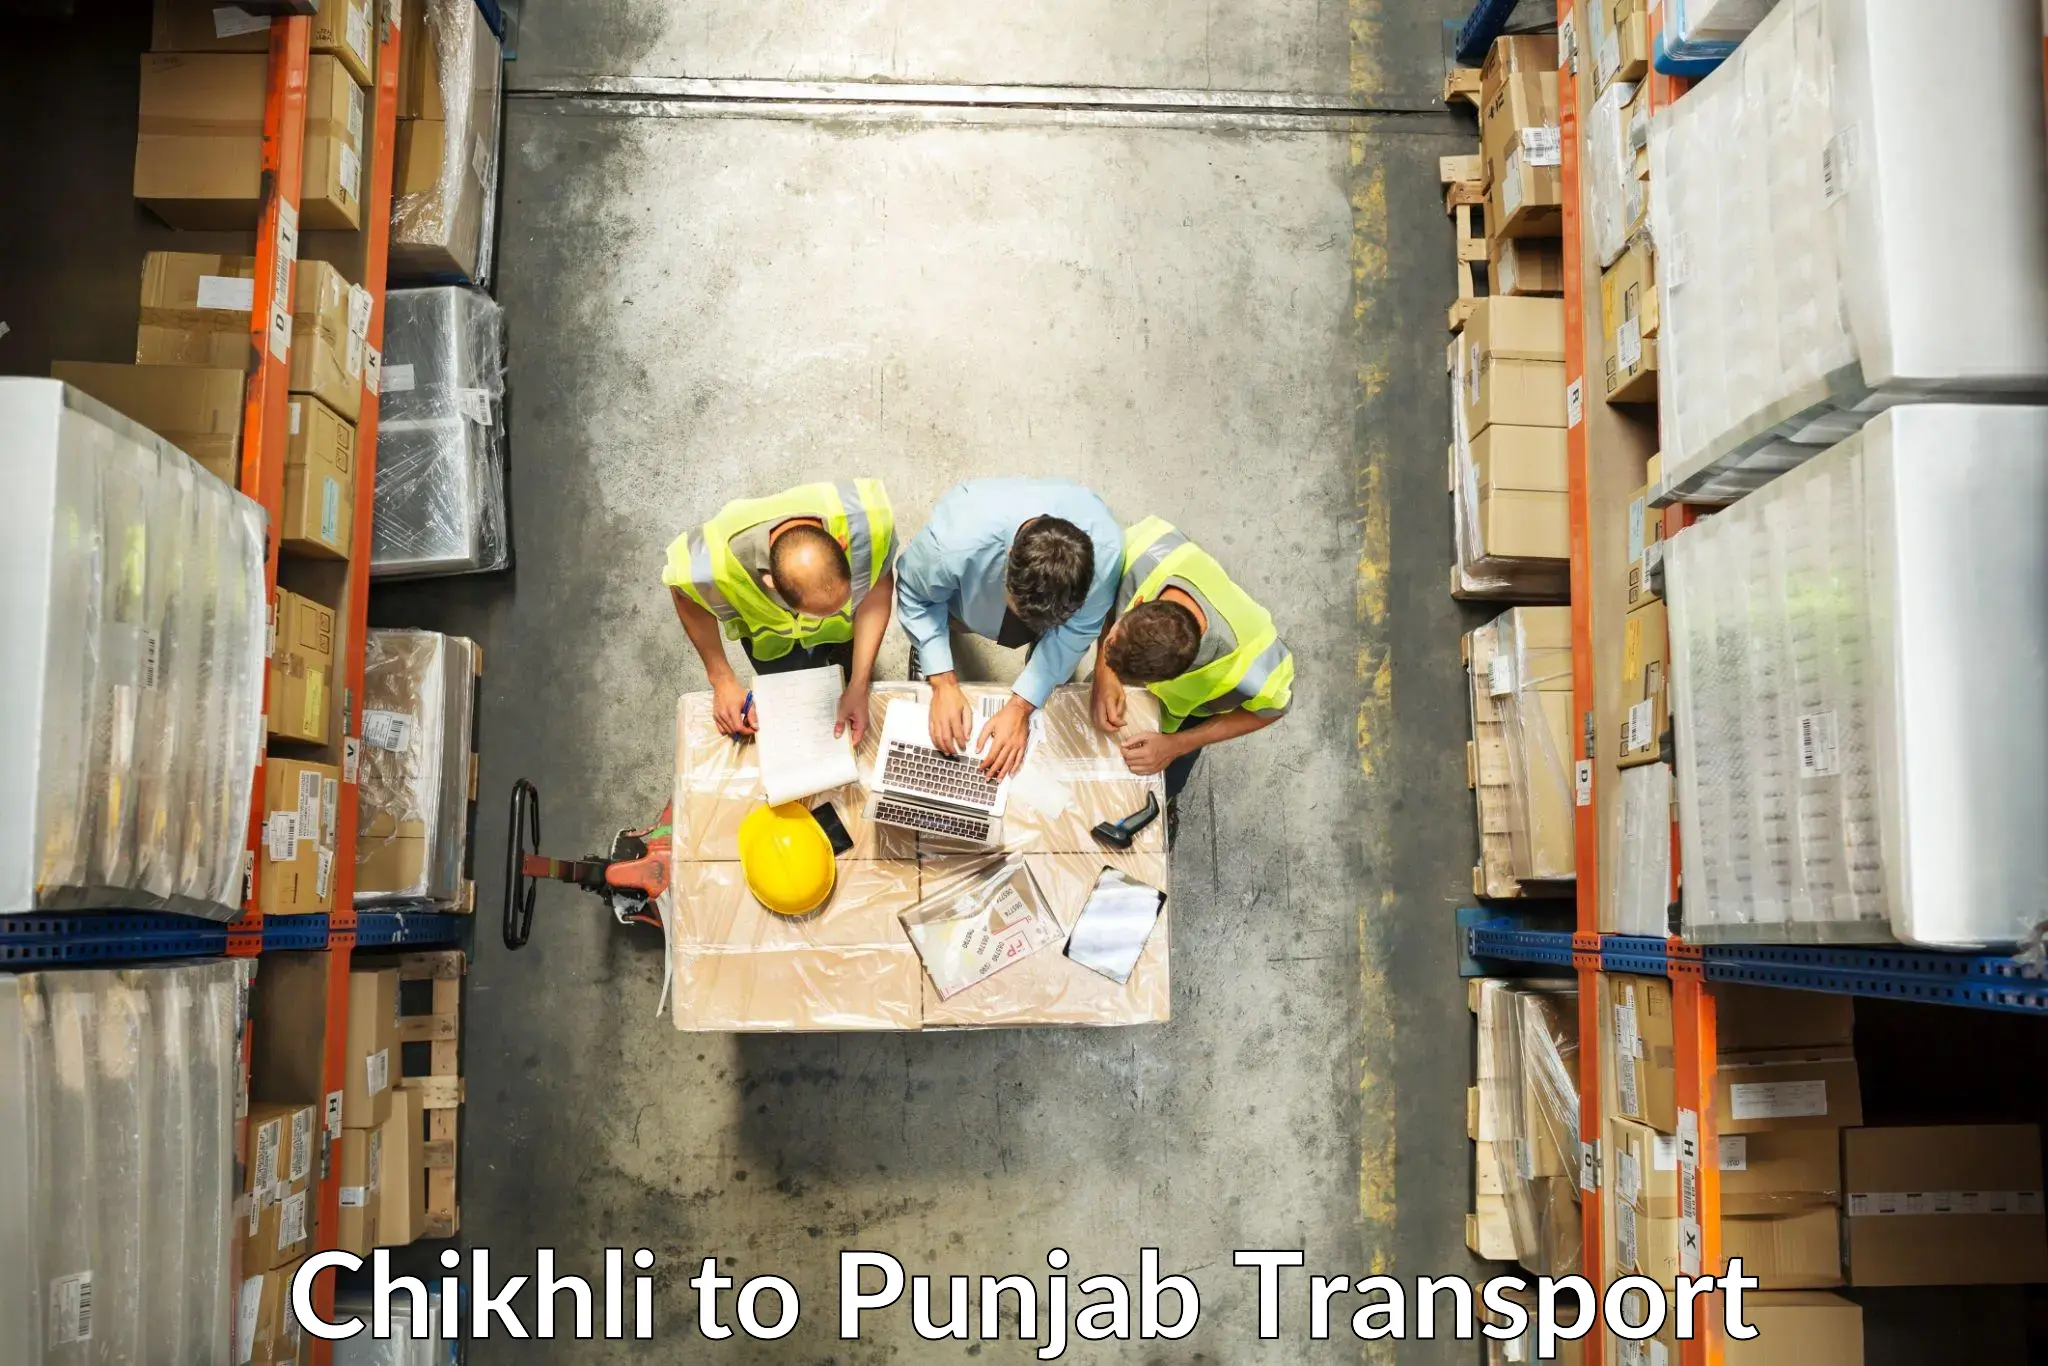 Daily parcel service transport Chikhli to Malerkotla